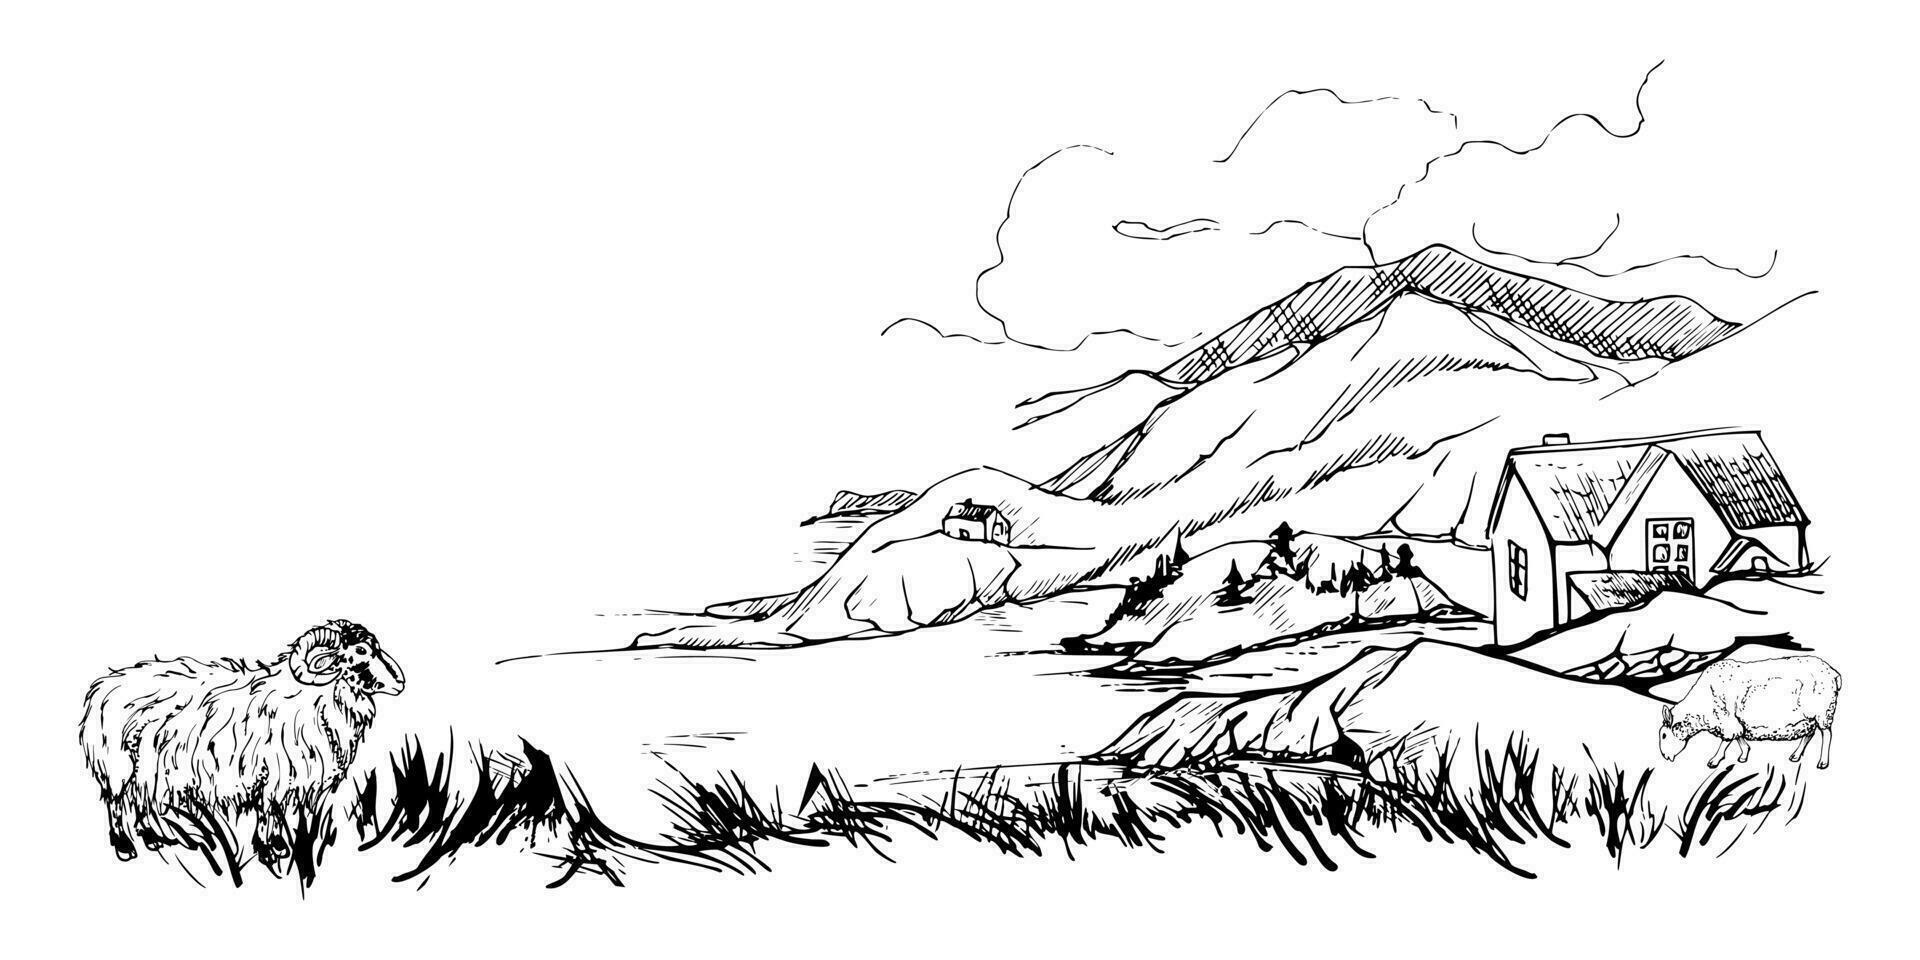 inkt hand- getrokken schetsen vector illustratie. landschap landschap van hooglanden platteland natuur. heuvels, meer, schapen. horizontaal banier samenstelling. ontwerp voor reis, toerisme, brochure, afdrukken, muur kunst